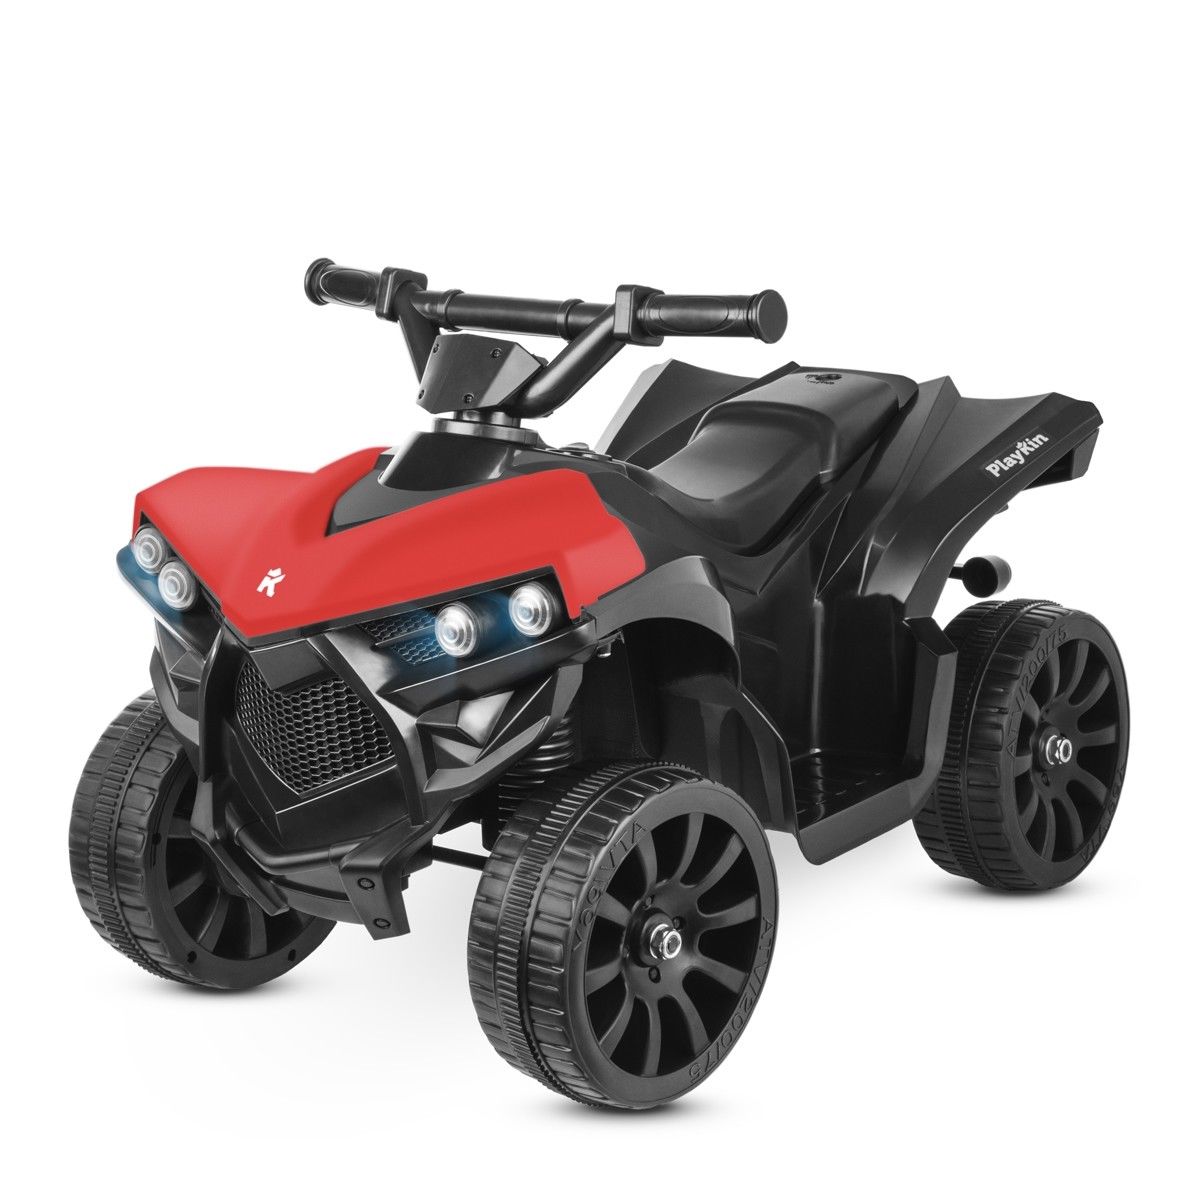 Vehículo infantil quad de juguete solo 39,99€